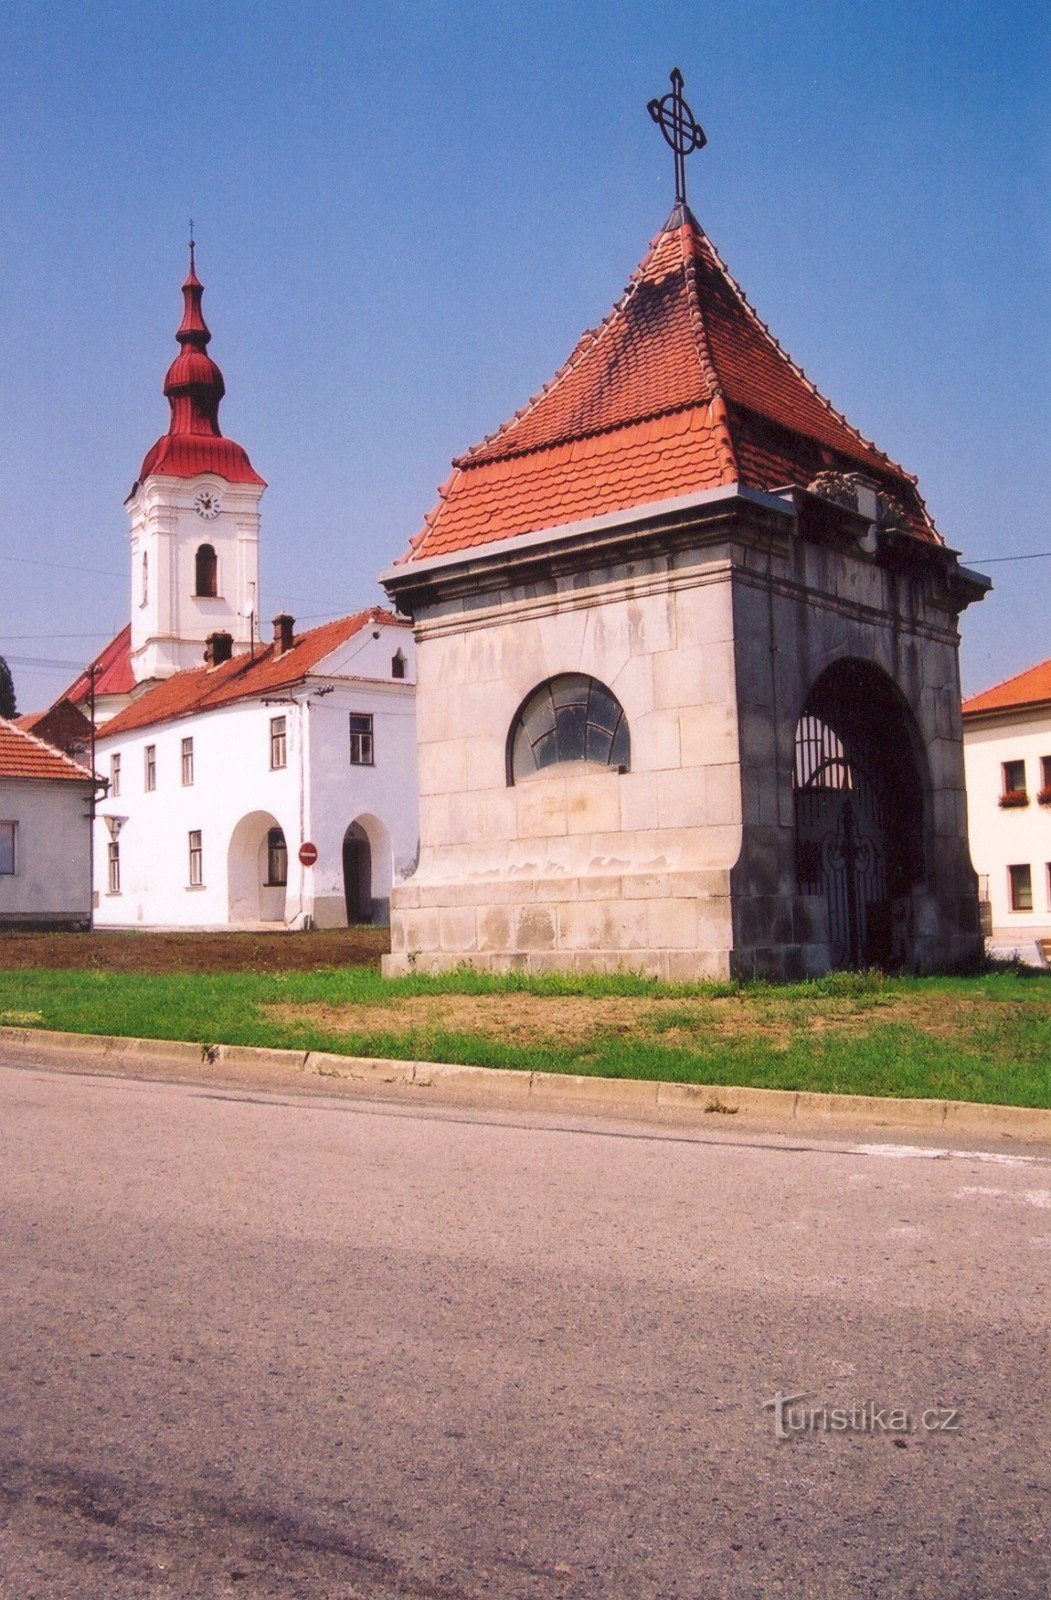 モジツェ - 聖教会の礼拝堂ヴァーツラフ